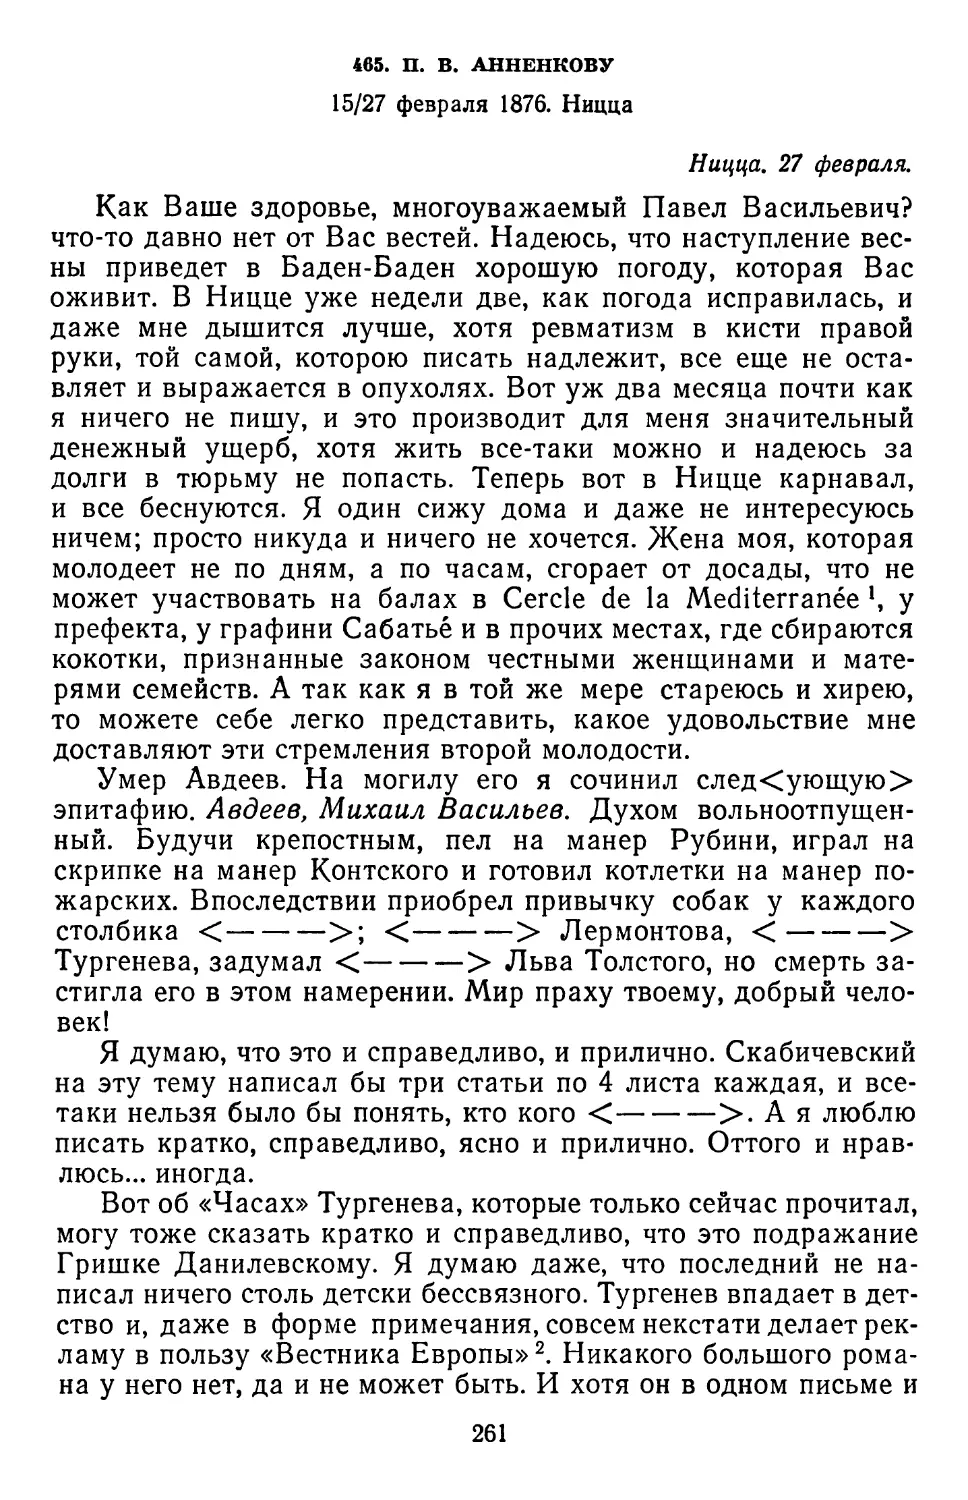 465.П.В.Анненкову. 15/27 февраля 1876. Ницца..